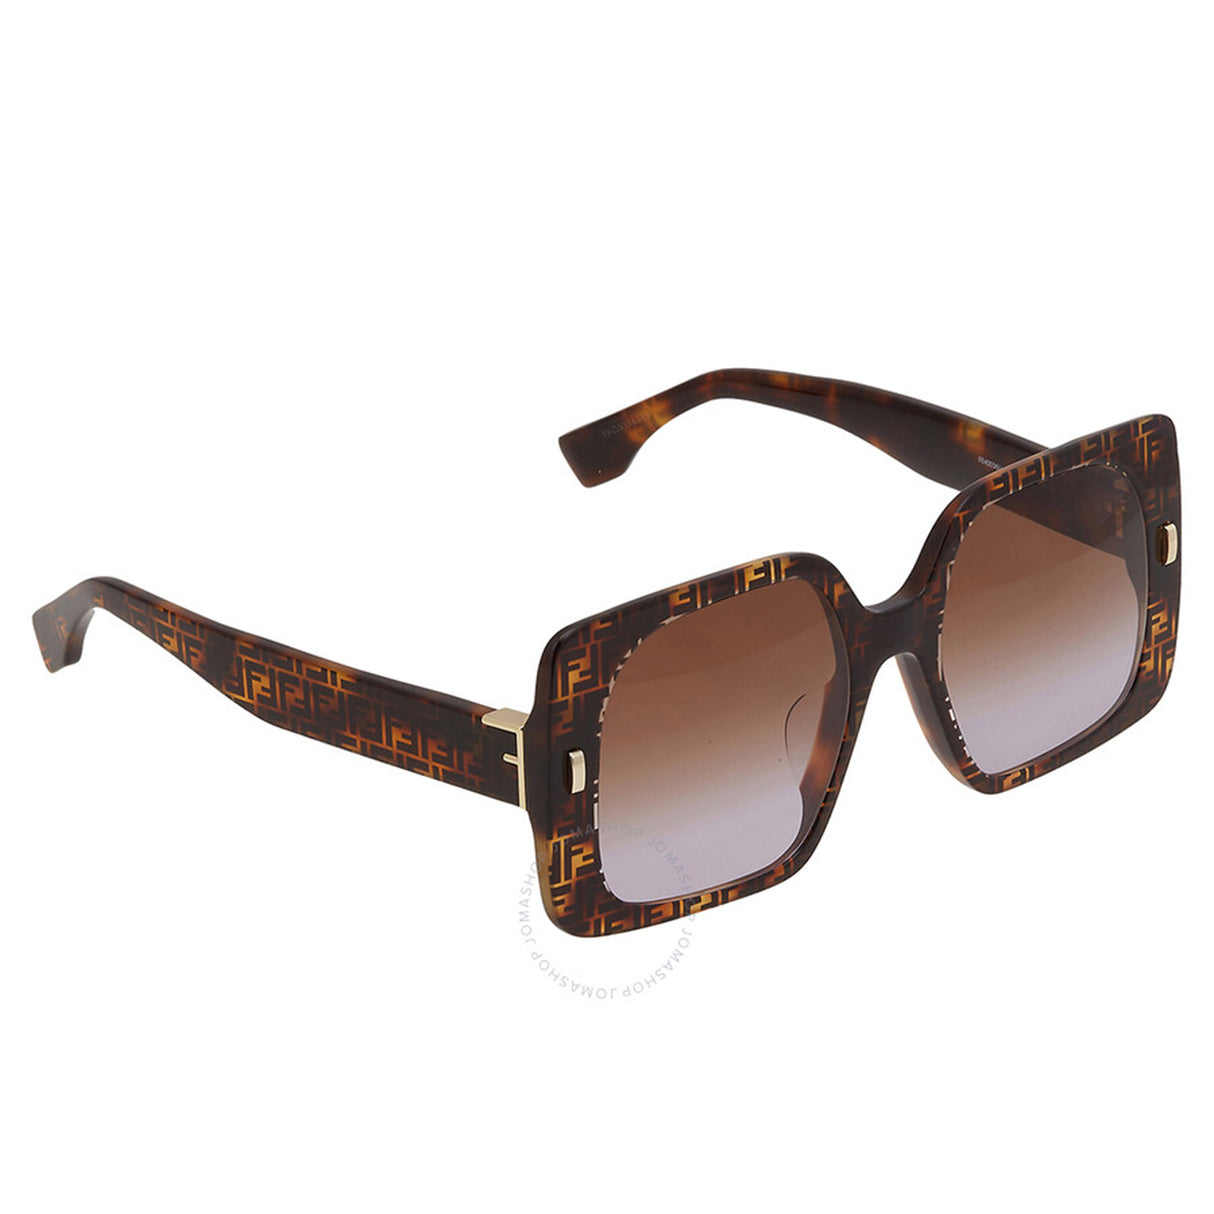 نظارة شمسية فندي FE40036U 55F 53 للنساء